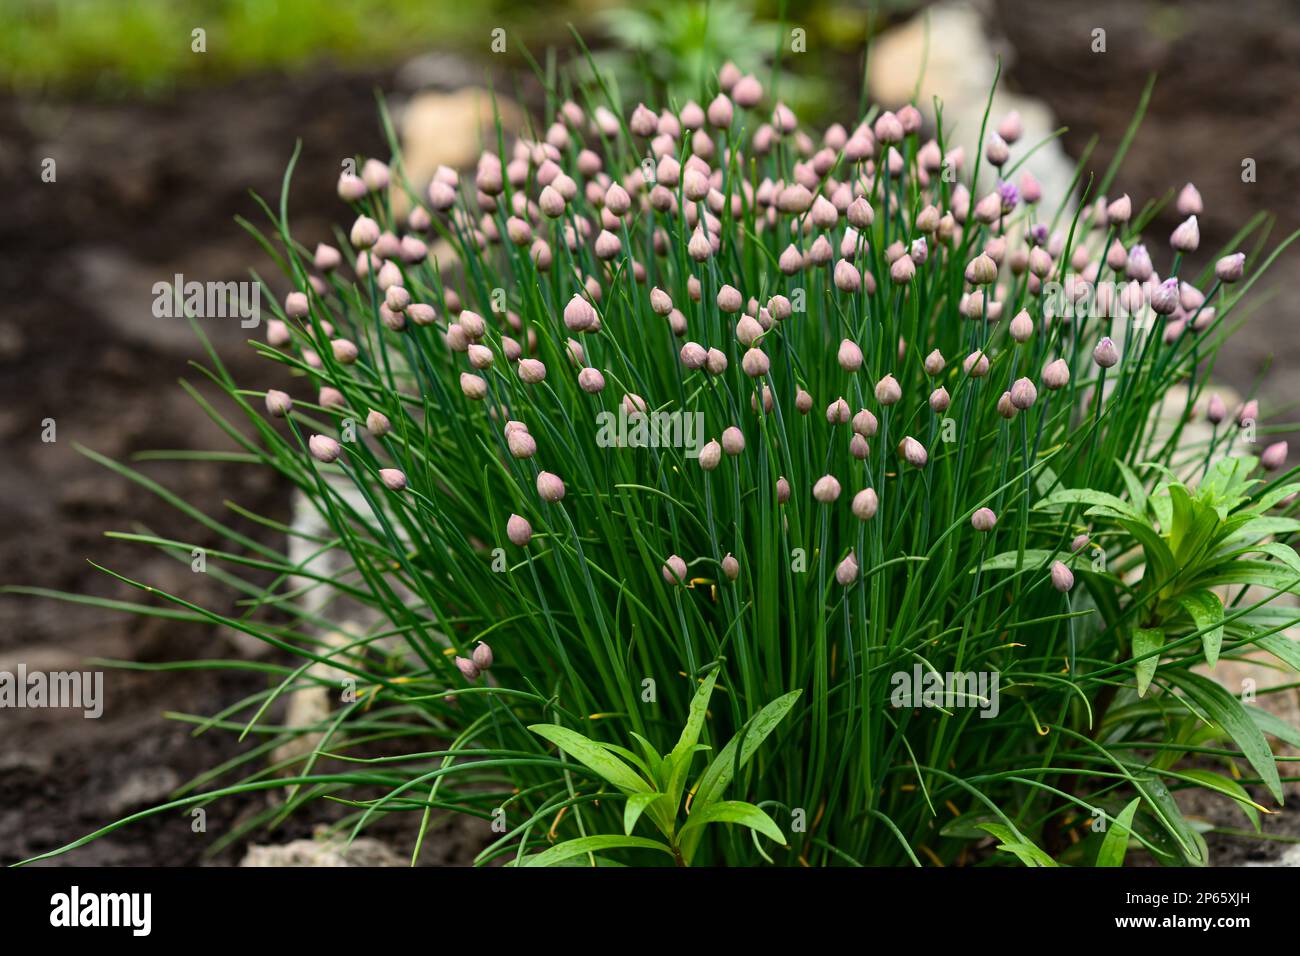 Bourgeons et feuilles vertes de Chives ou Allium schoenoprasum dans le jardin de printemps. Gros plan, mise au point sélective. Banque D'Images